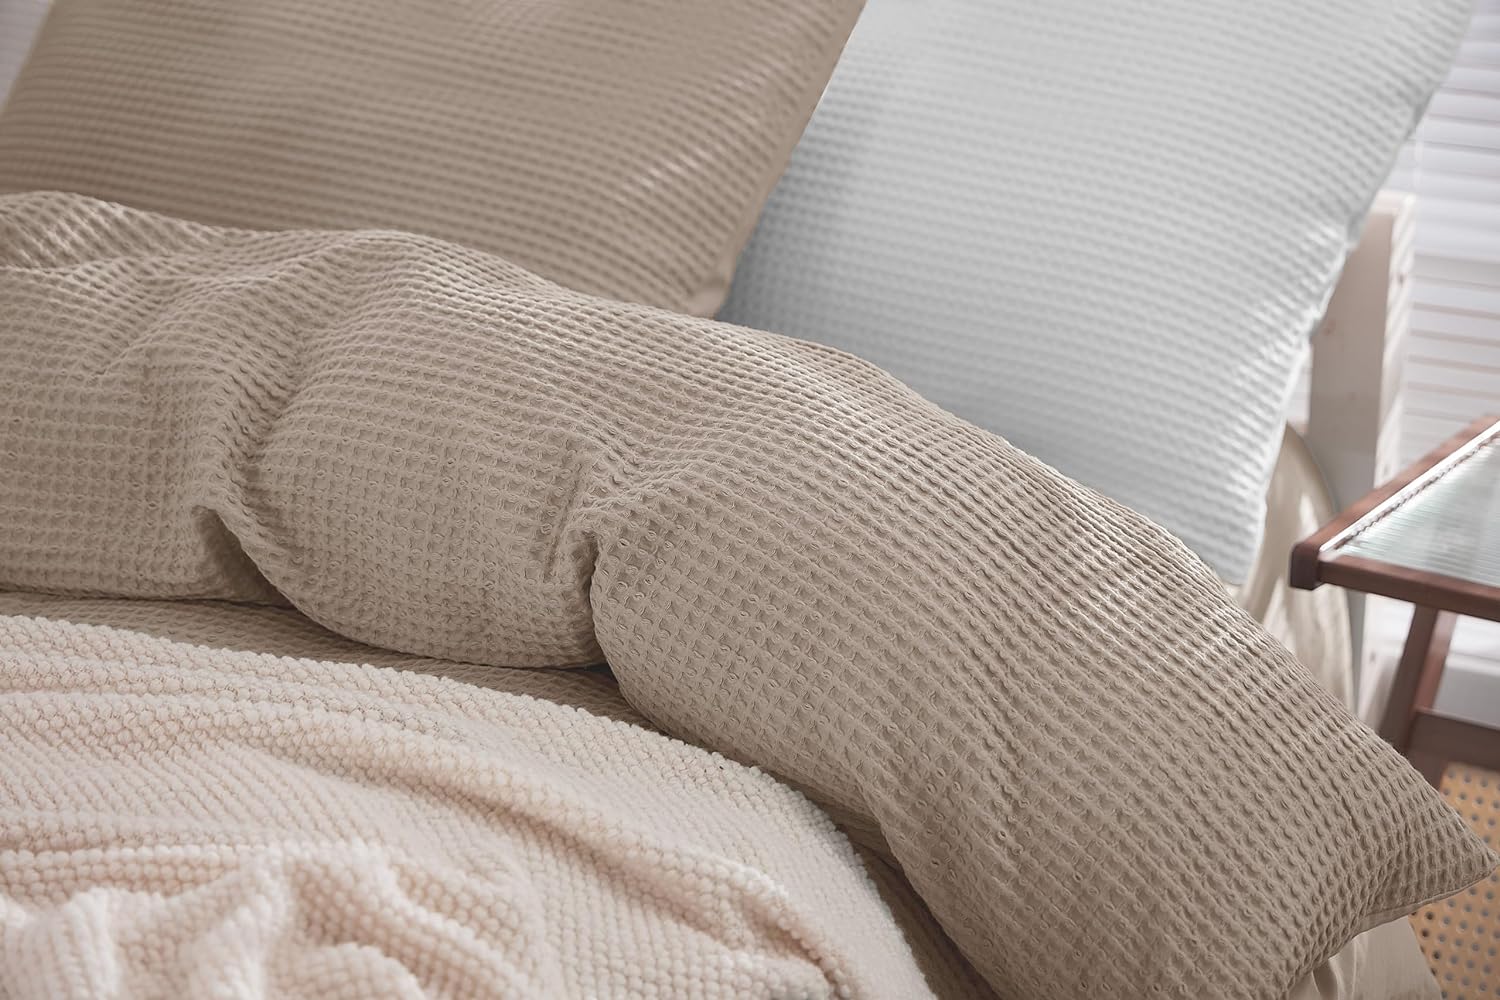 Bettwäsche mit Waffelstruktur 3-teilig: Bettbezug 200x200cm + 2X Kissenbezug 80x80cm atmungsaktiv & pflegeleicht, 100% Baumwolle